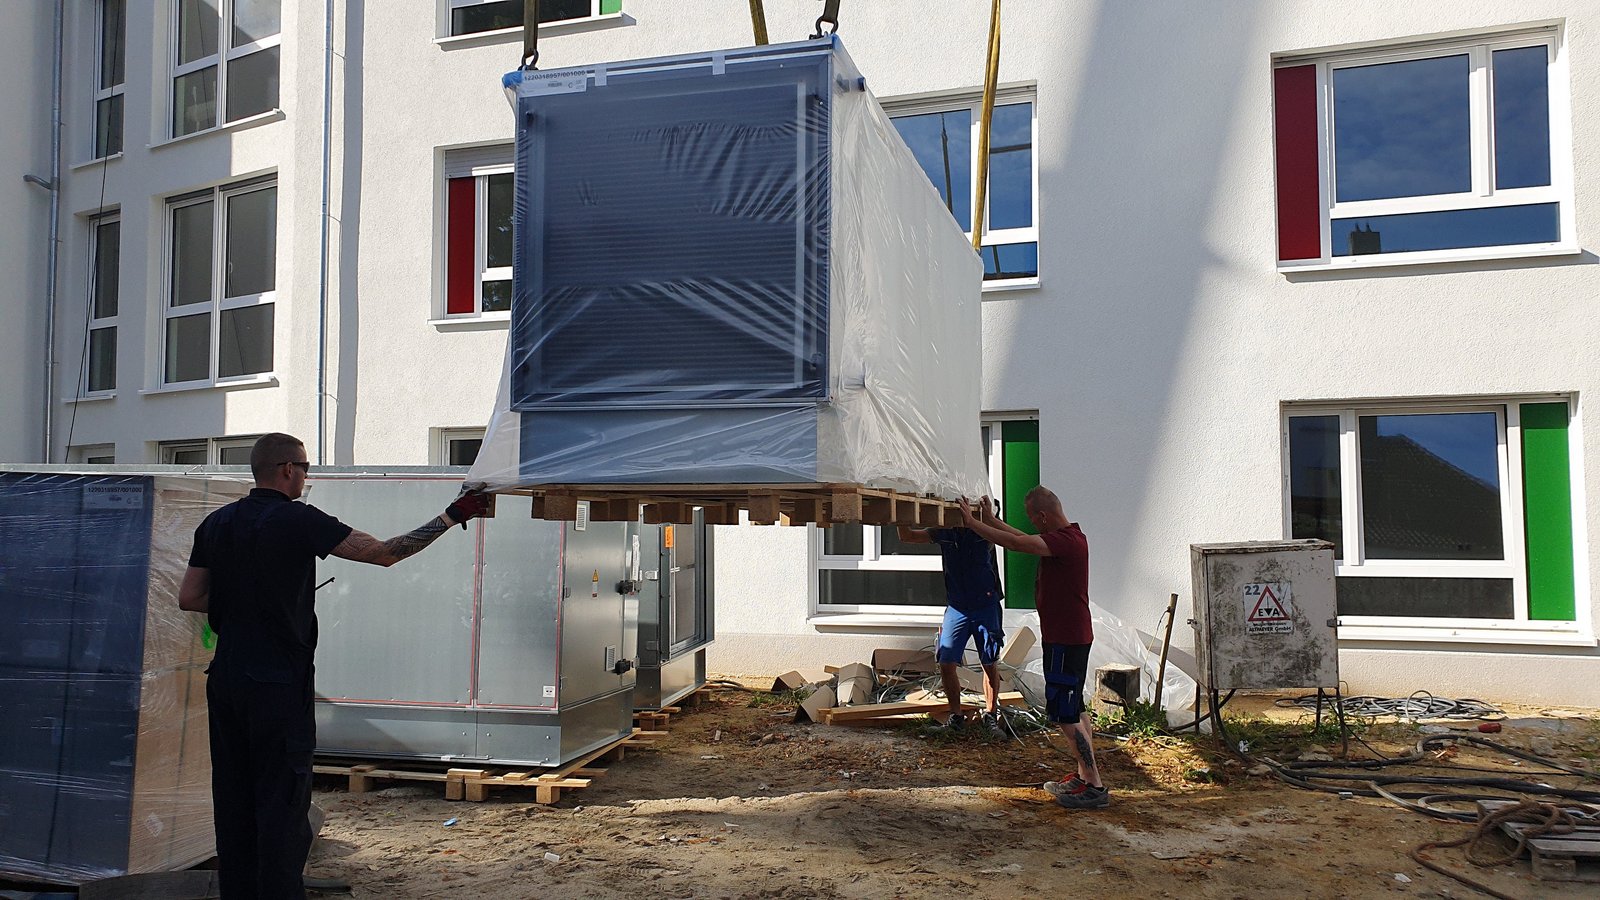 Anlieferung und Montage eines Wärmetauschers für ein gemeinnütziges Unternehmen in Bochum